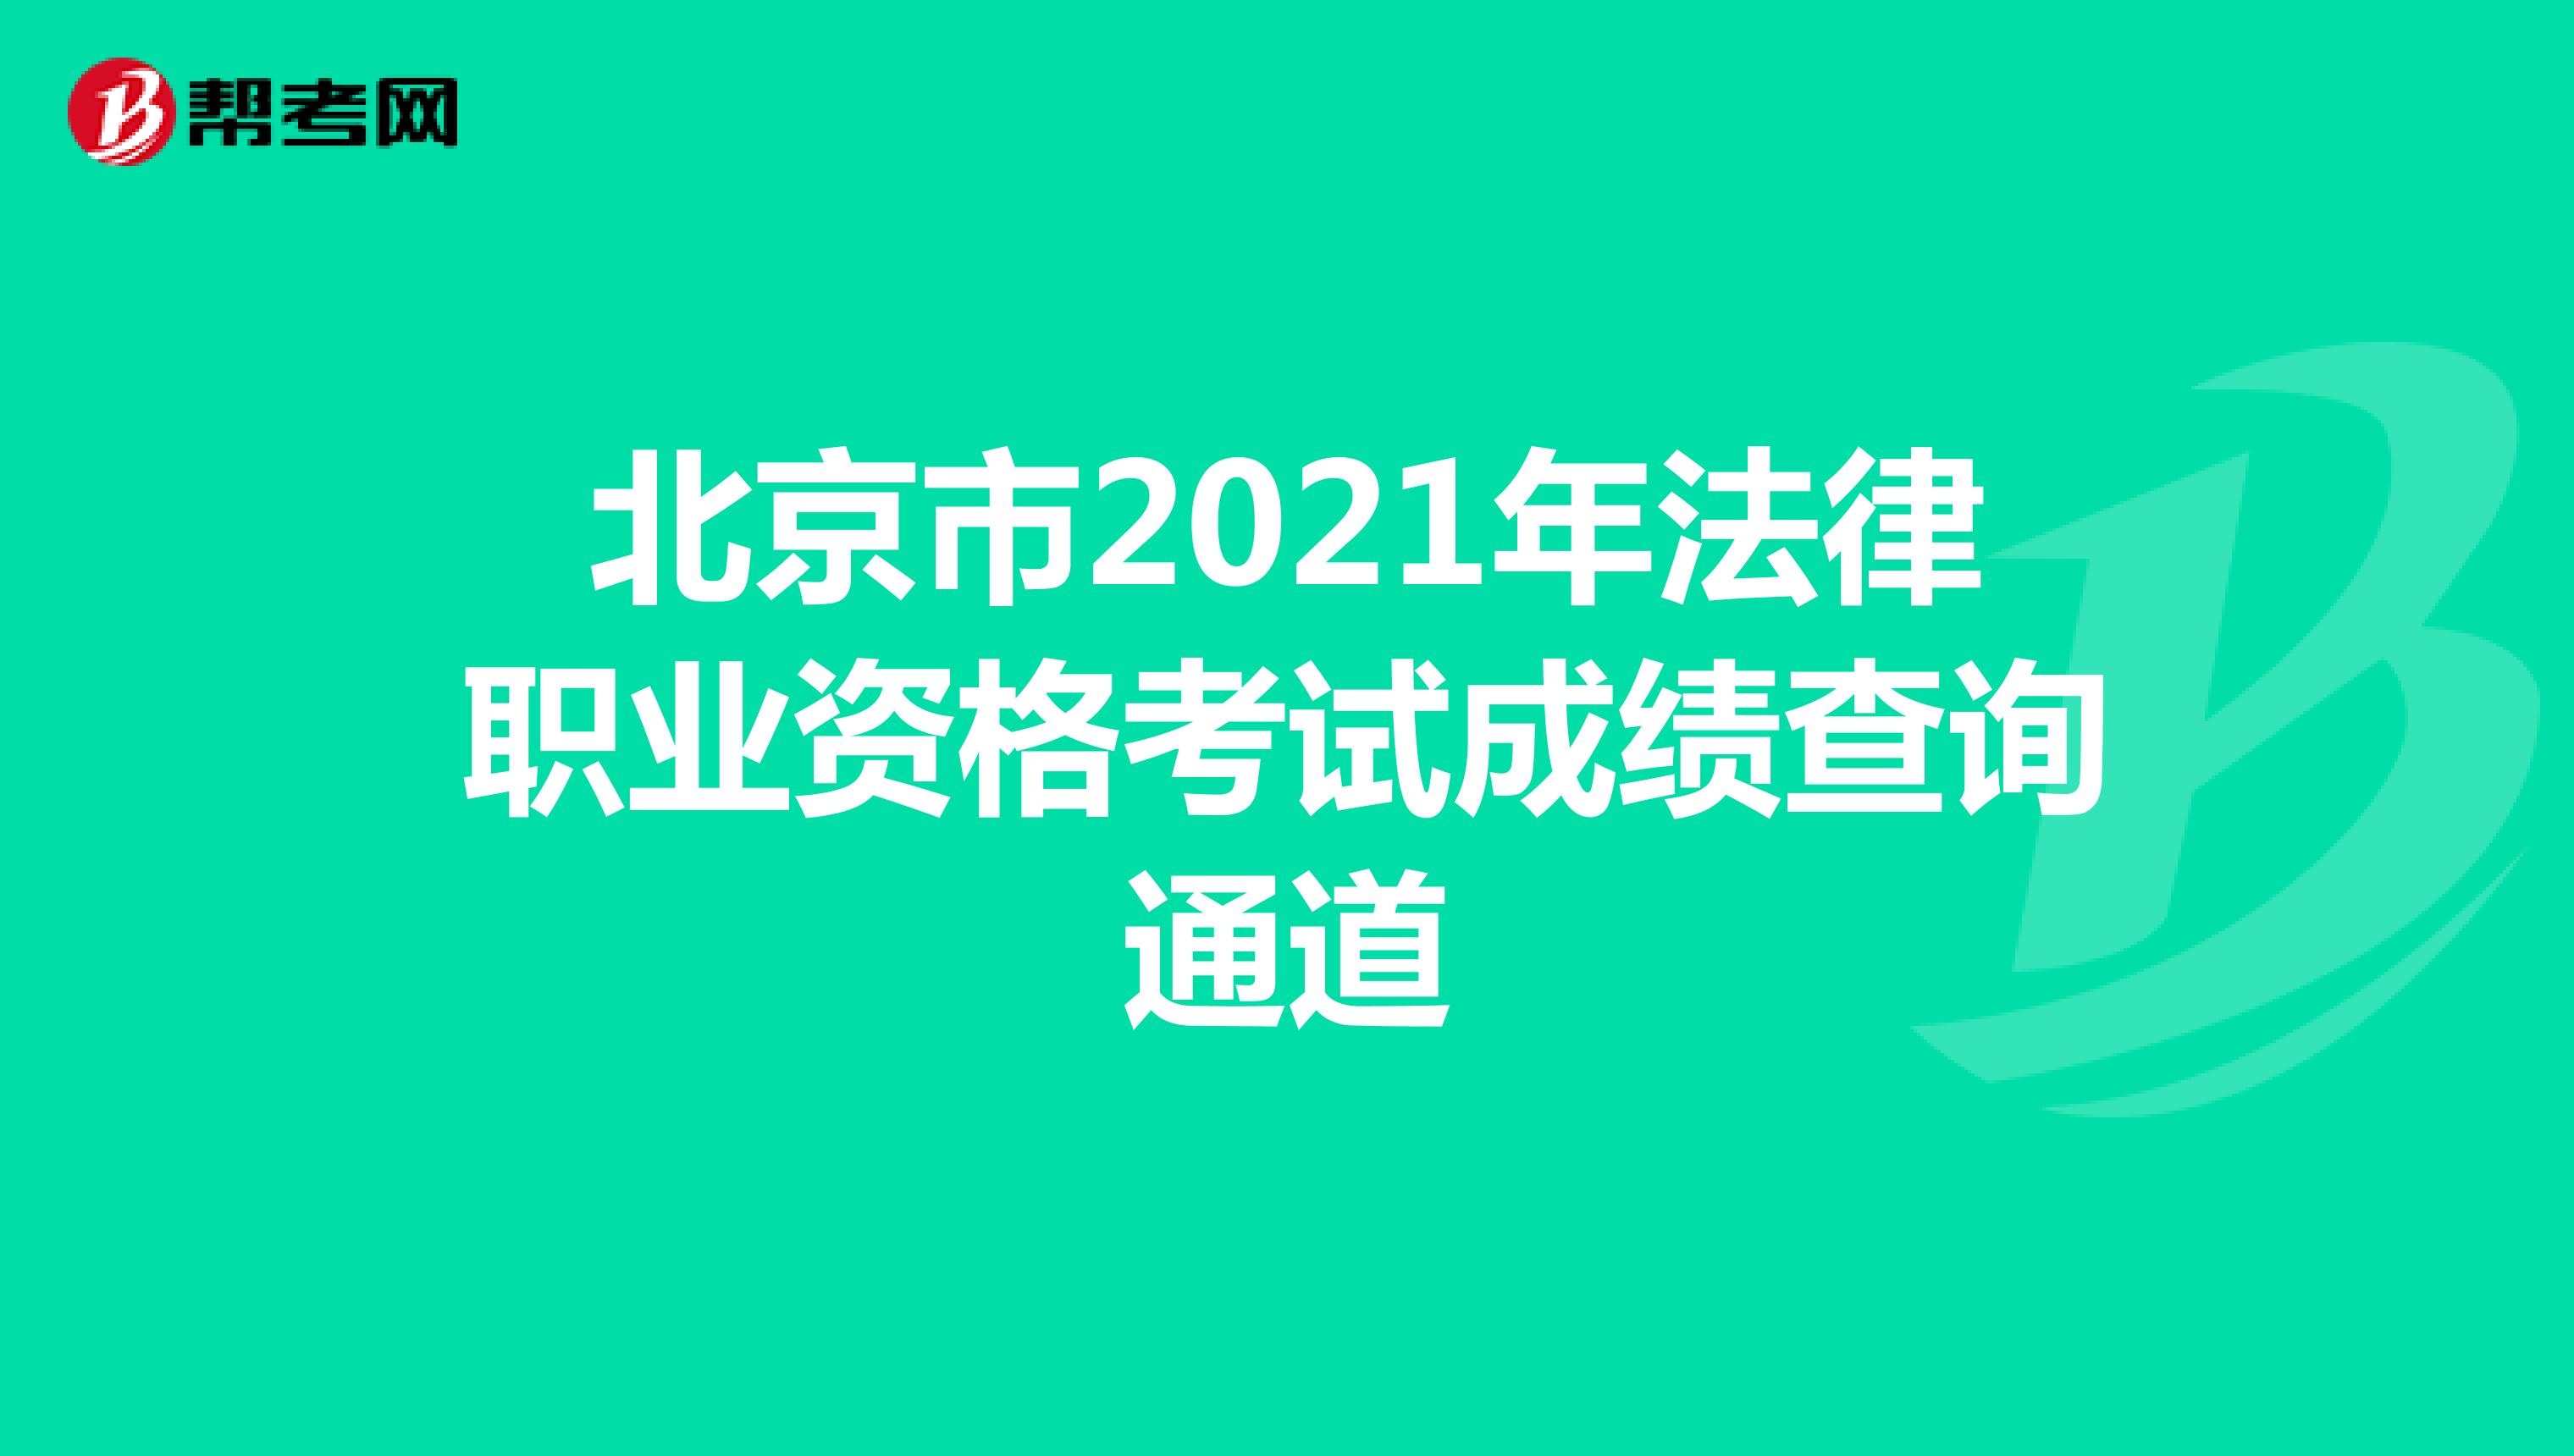 北京市2021年法律职业资格考试成绩查询通道